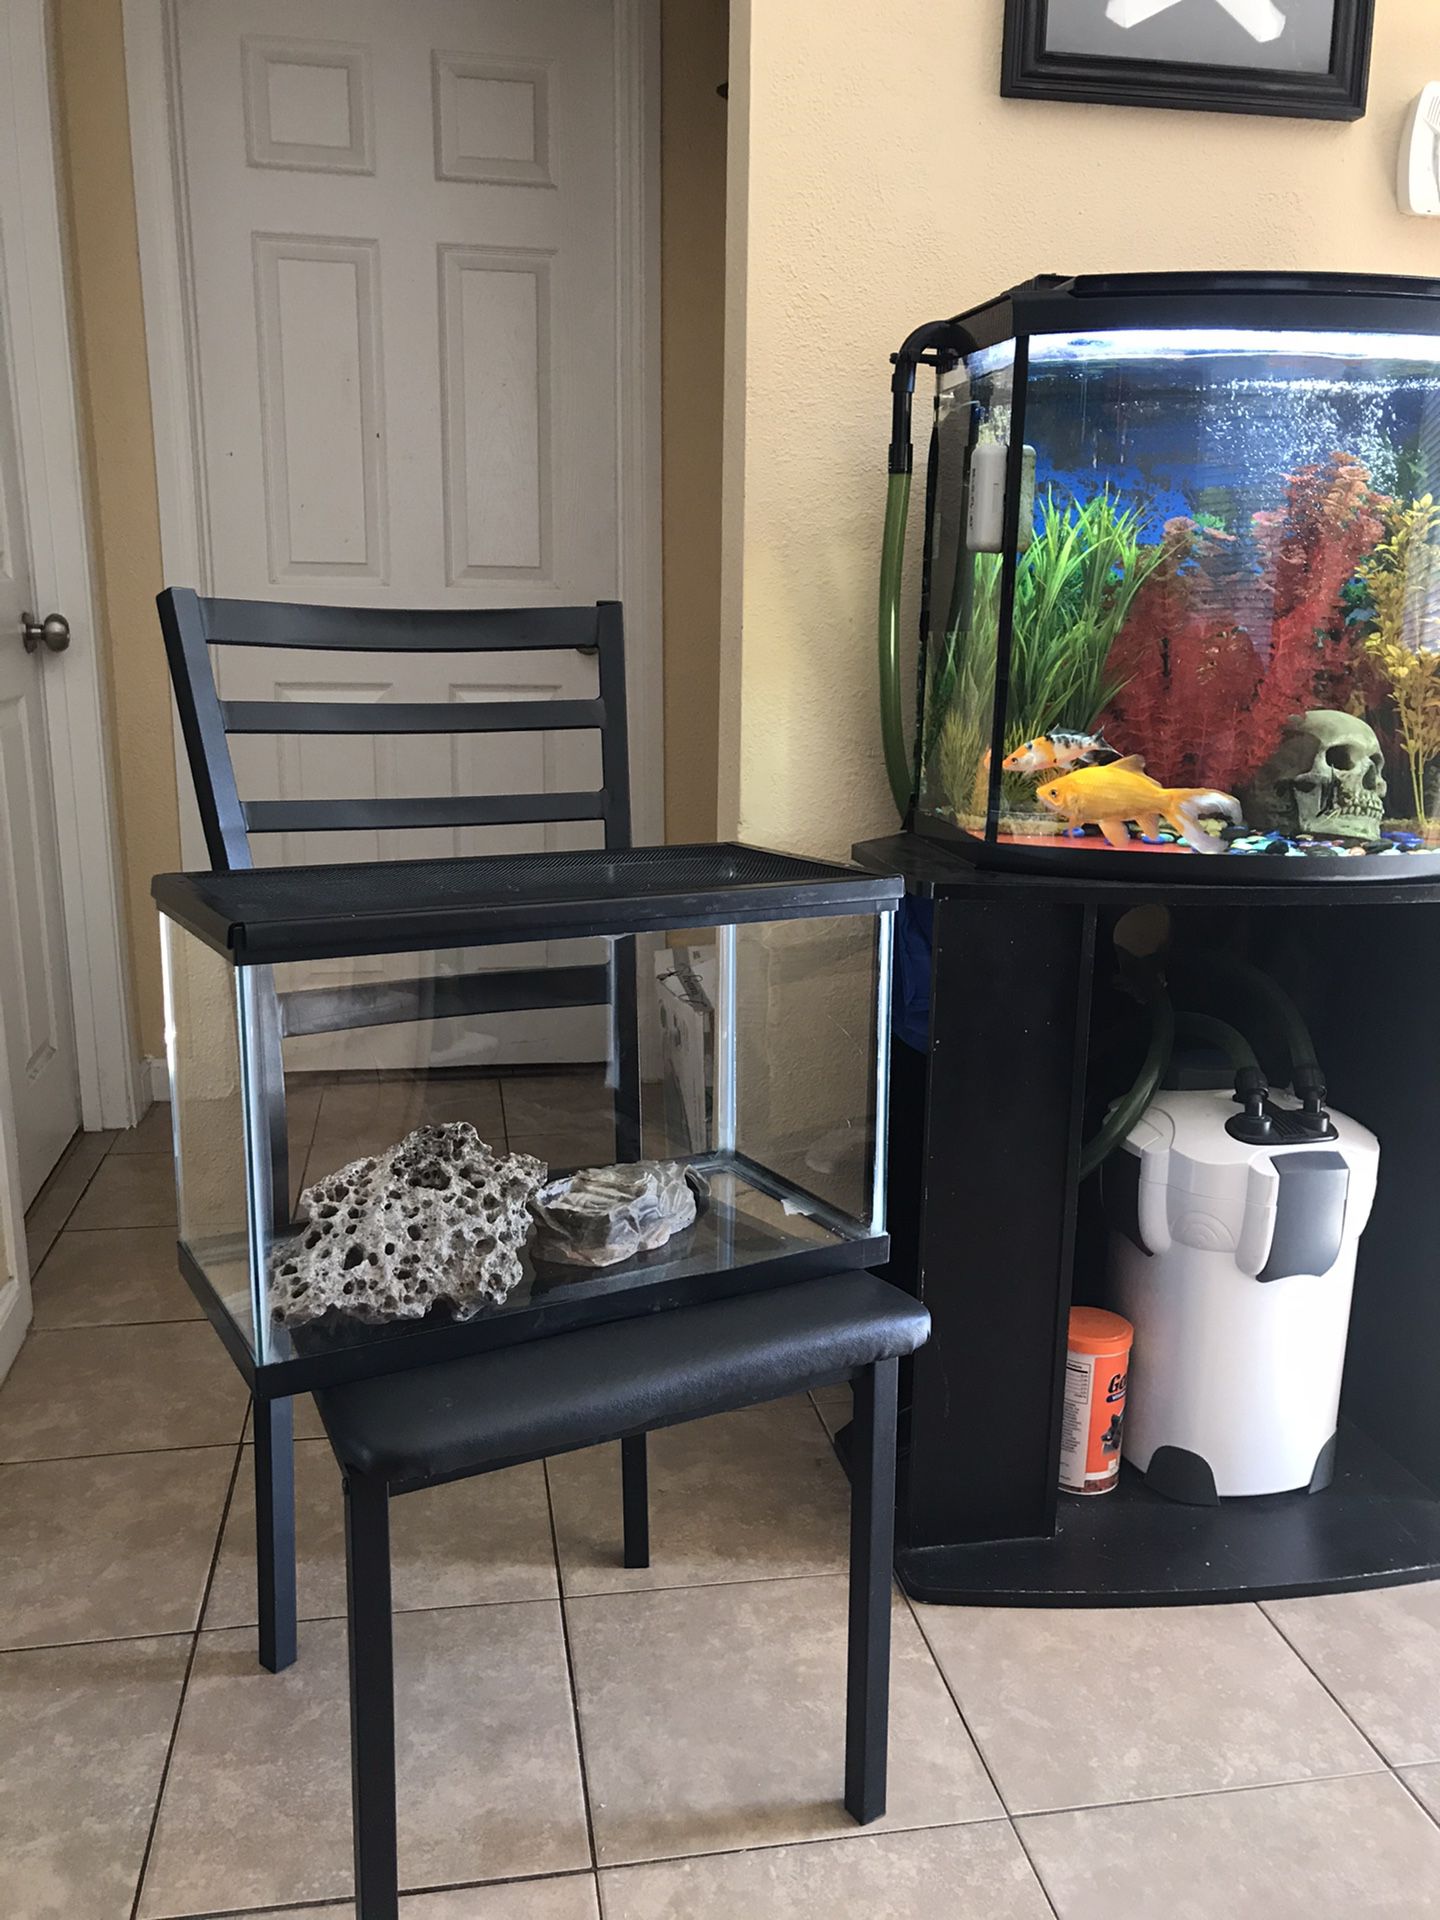 10 gallon fish tank or reptile tank